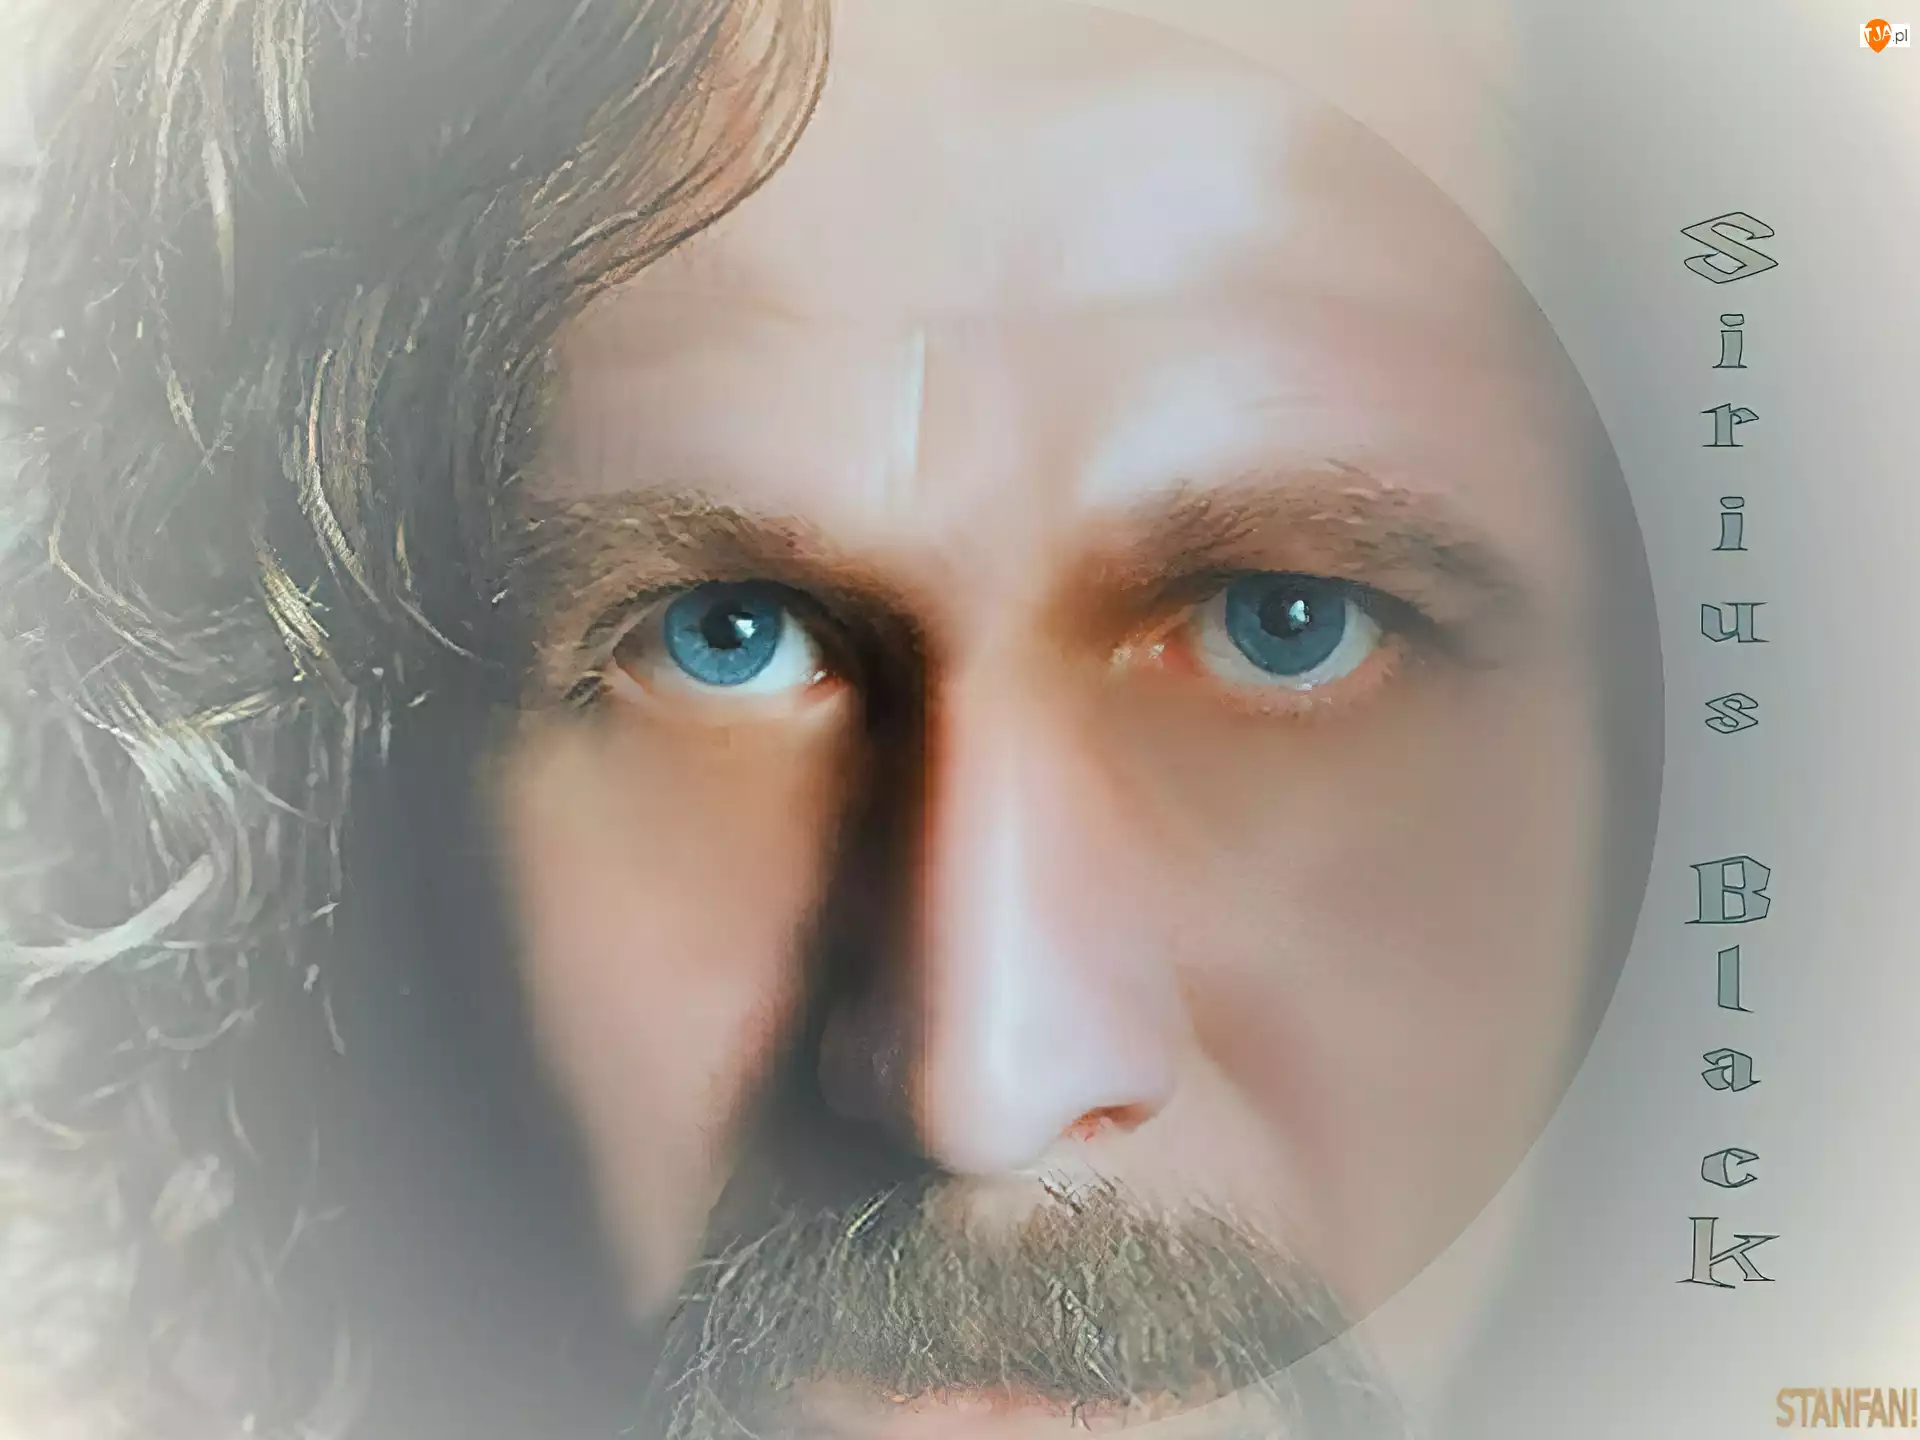 wąsy, Gary Oldman, niebieskie oczy